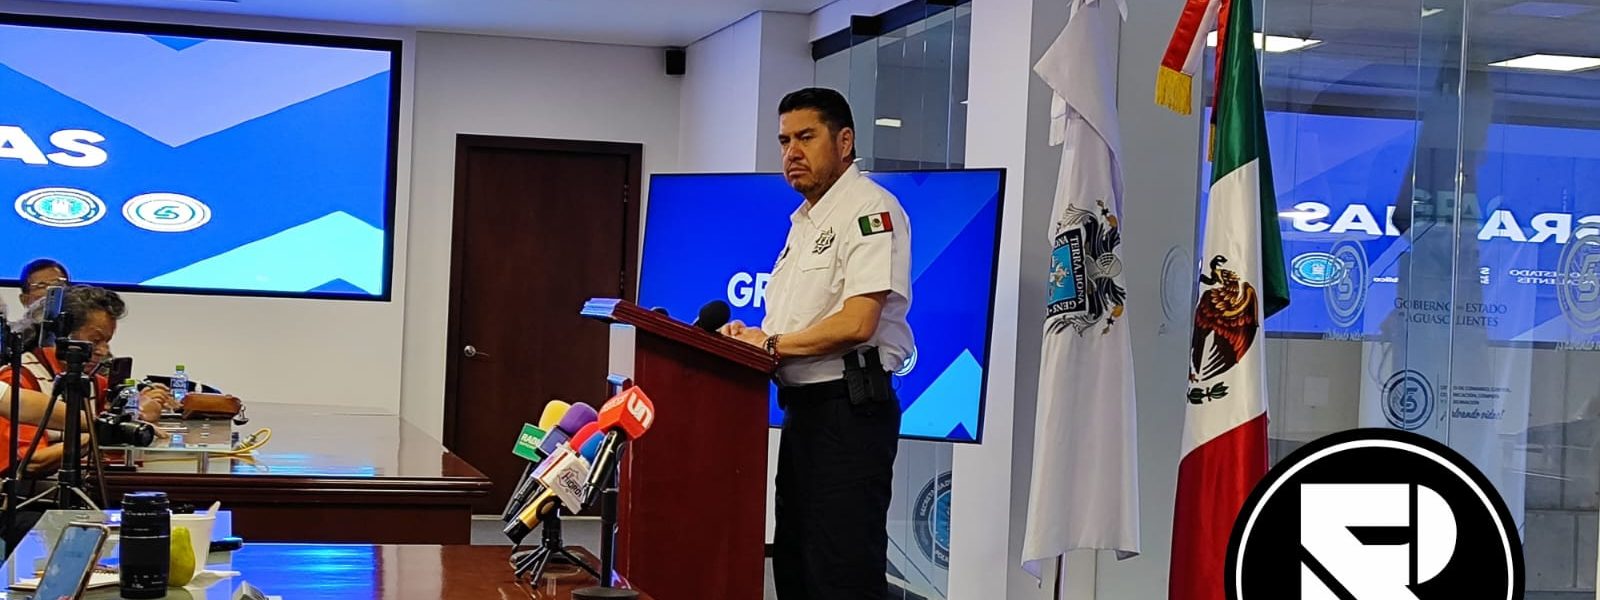 ¡ALONSO GARCÍA TIENE OTROS DATOS DE POLICIAS RELACIONADOS CON EL NARCO!